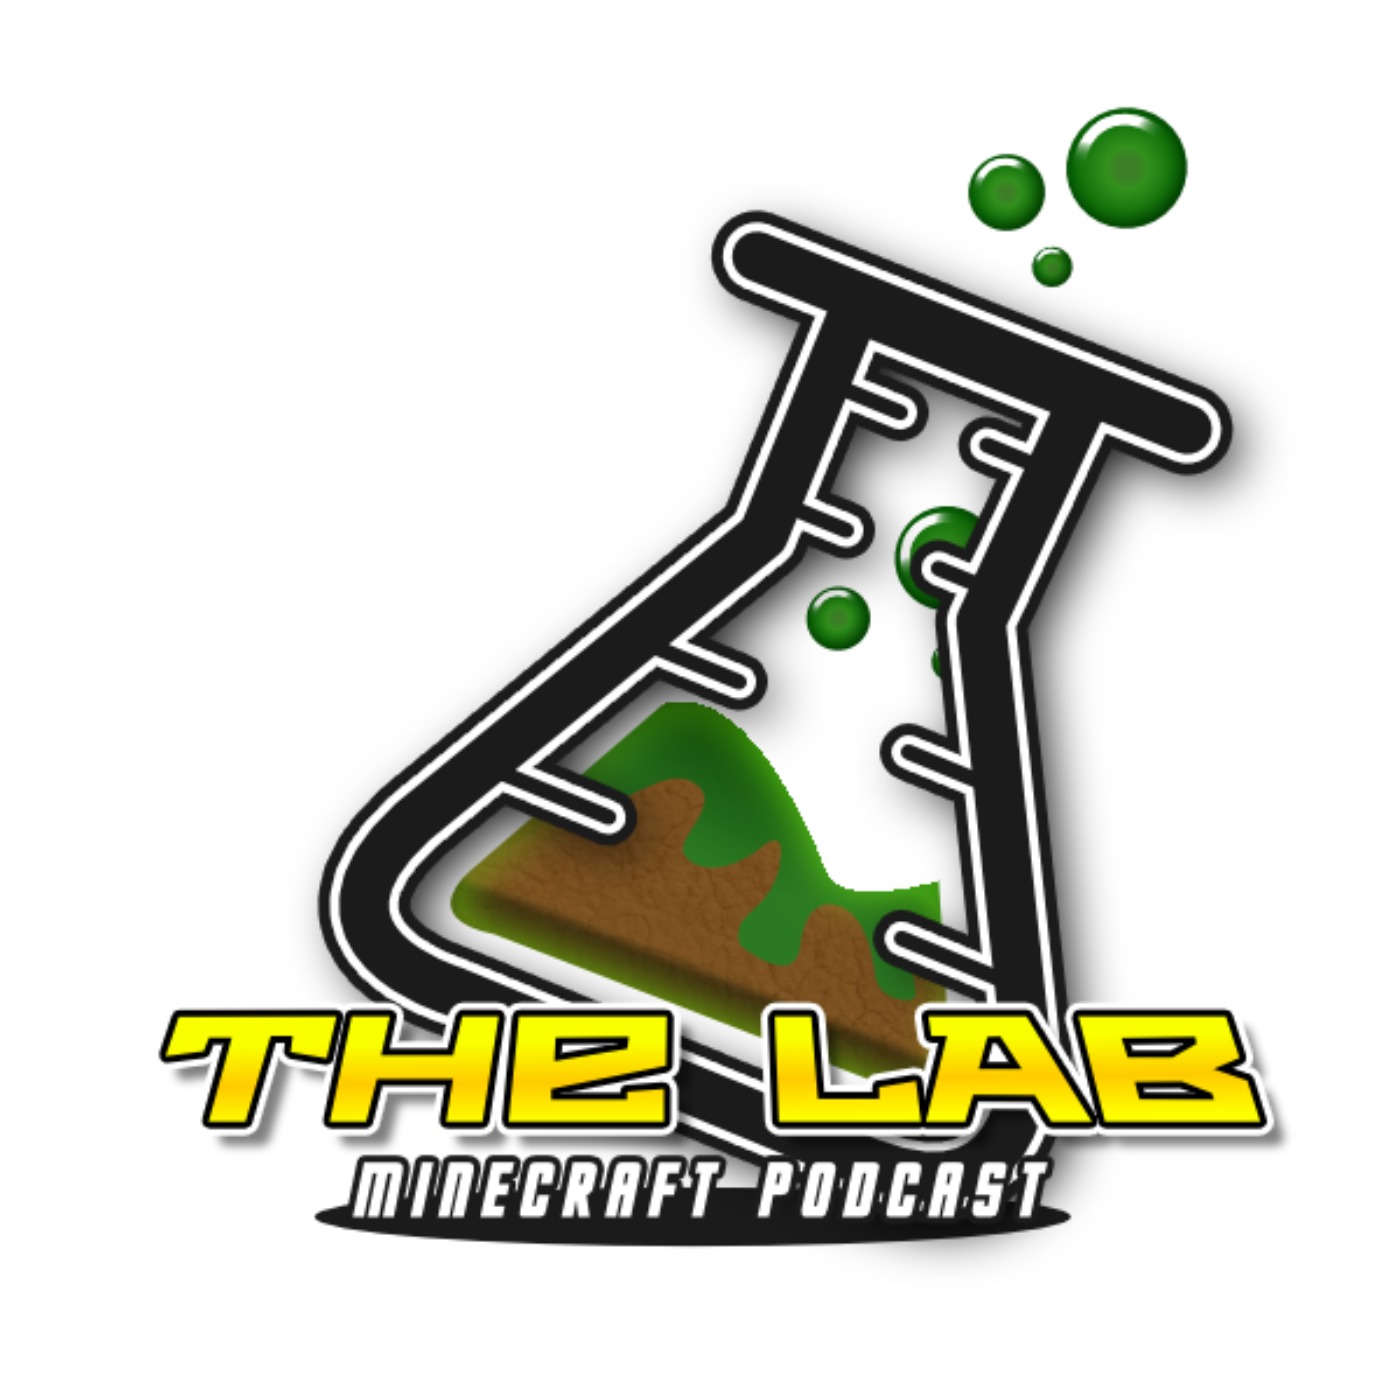 Minecraft Lab Logo